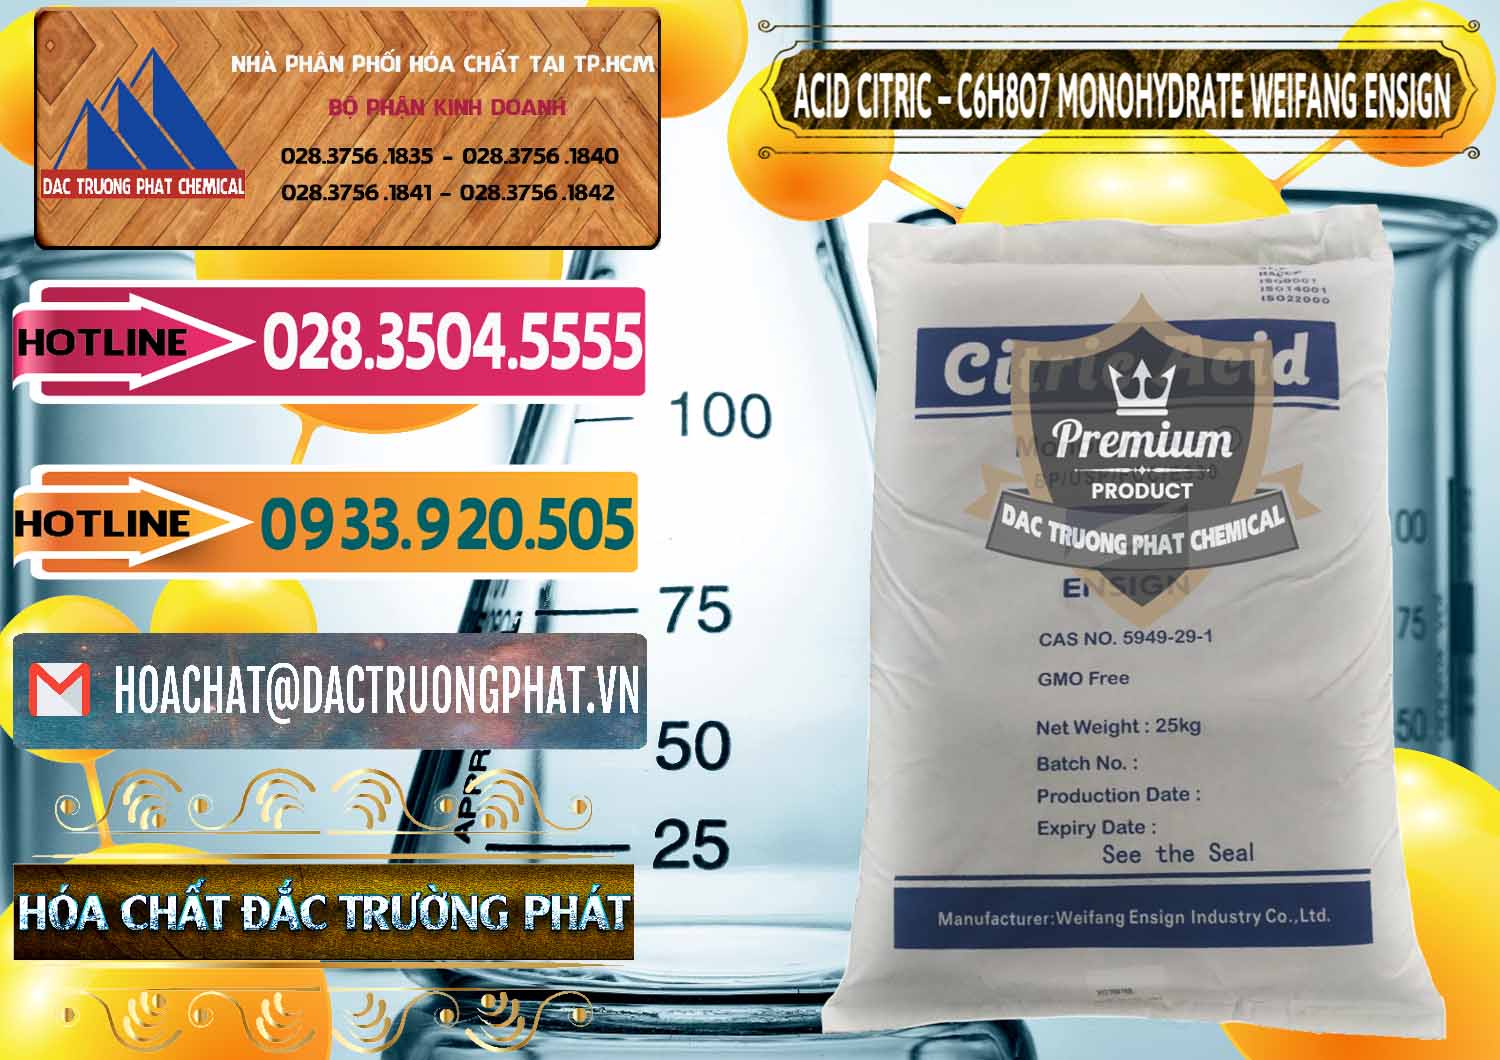 Cty bán - phân phối Acid Citric - Axit Citric Monohydrate Weifang Trung Quốc China - 0009 - Chuyên nhập khẩu và cung cấp hóa chất tại TP.HCM - dactruongphat.vn